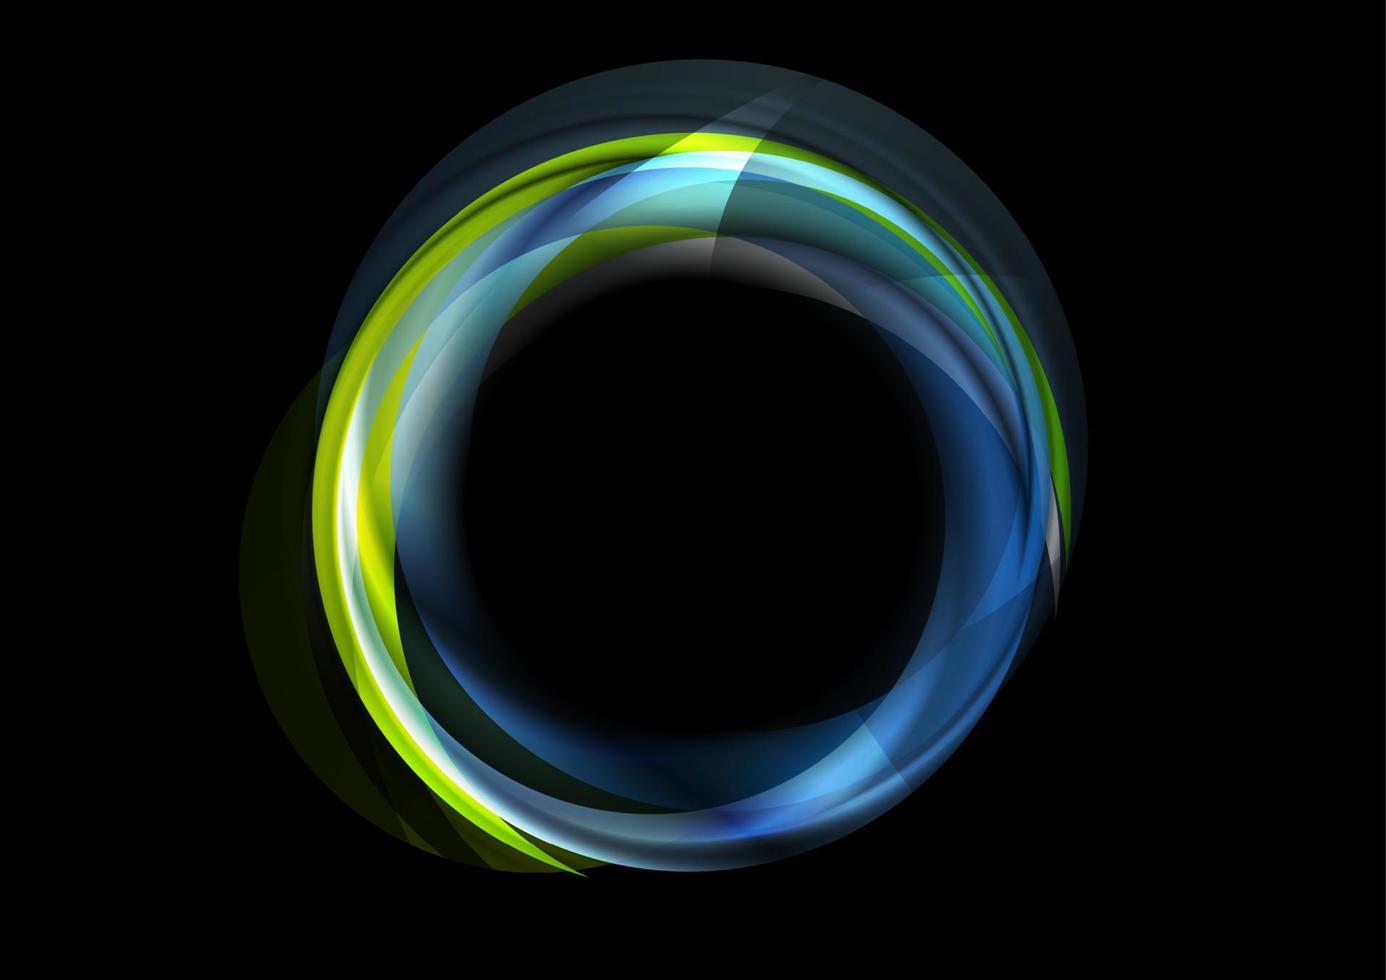 bunt Blau Grün glühend abstrakt kreisförmig Logo Hintergrund vektor